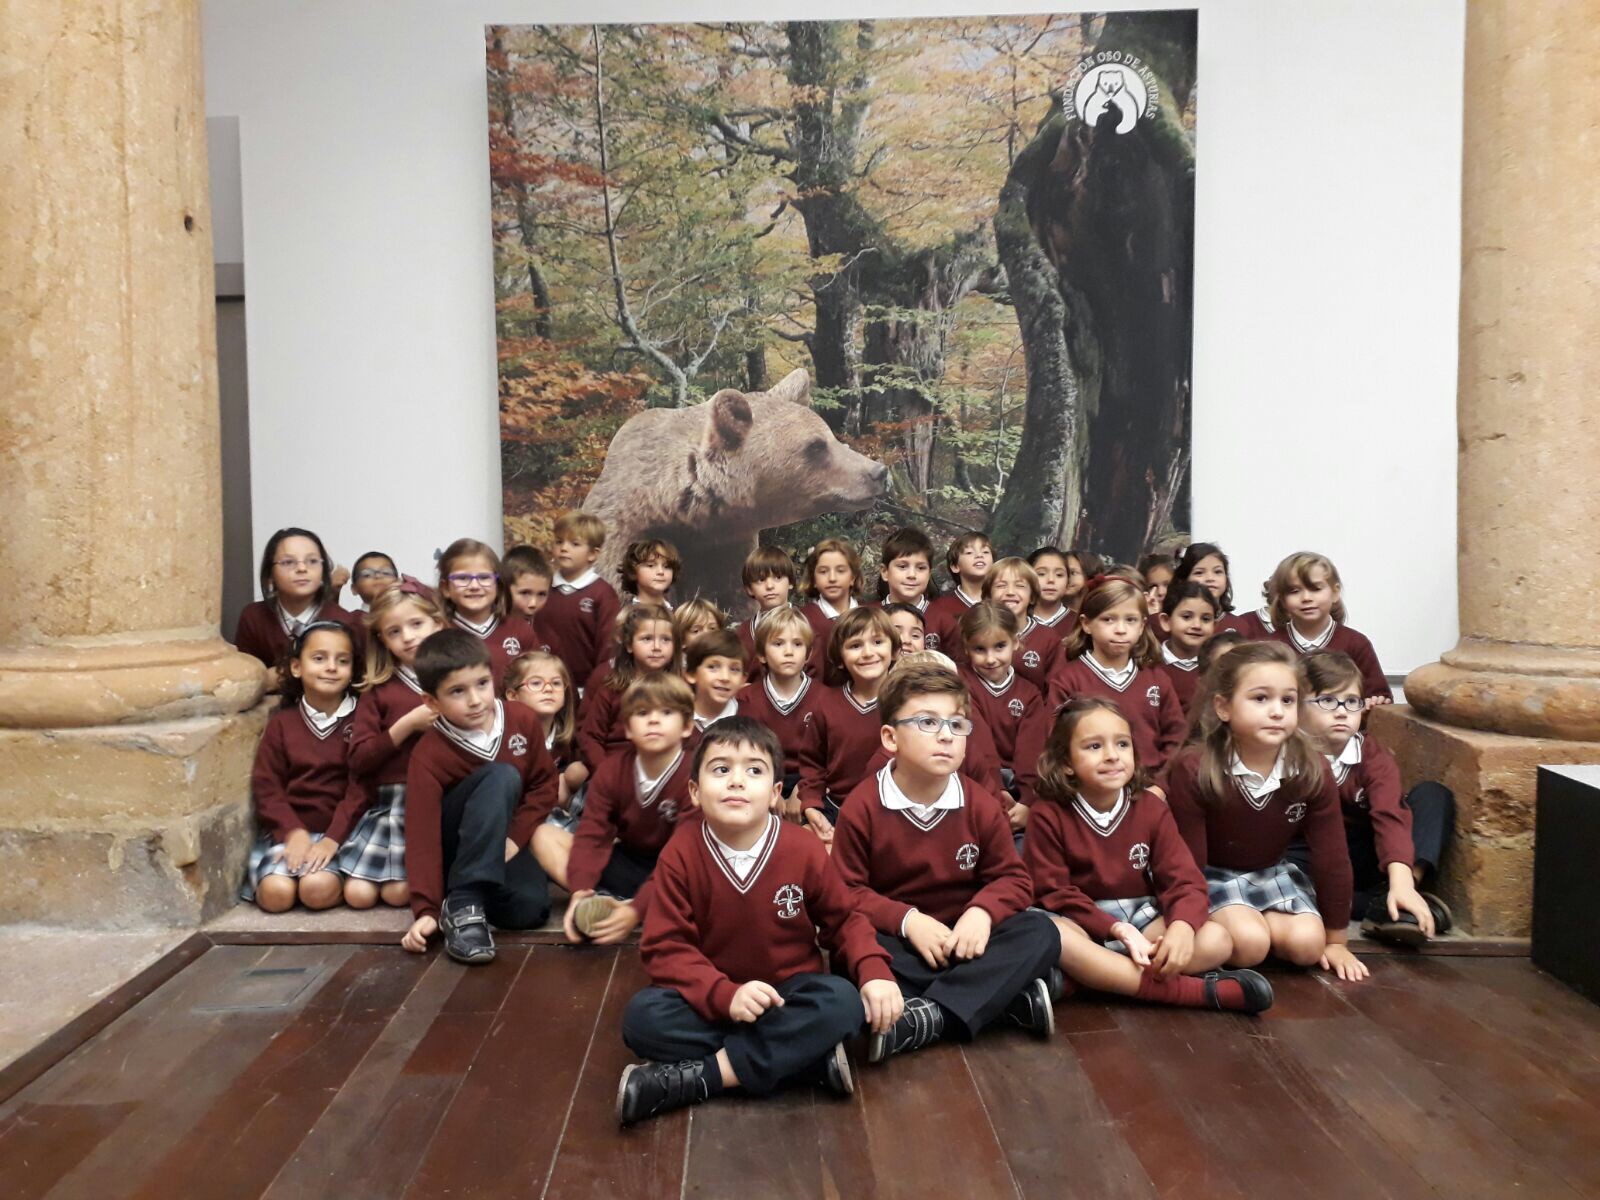 La exposición ‘Osos’ cierra sus tres semanas en Oviedo con casi 7.300 visitantes